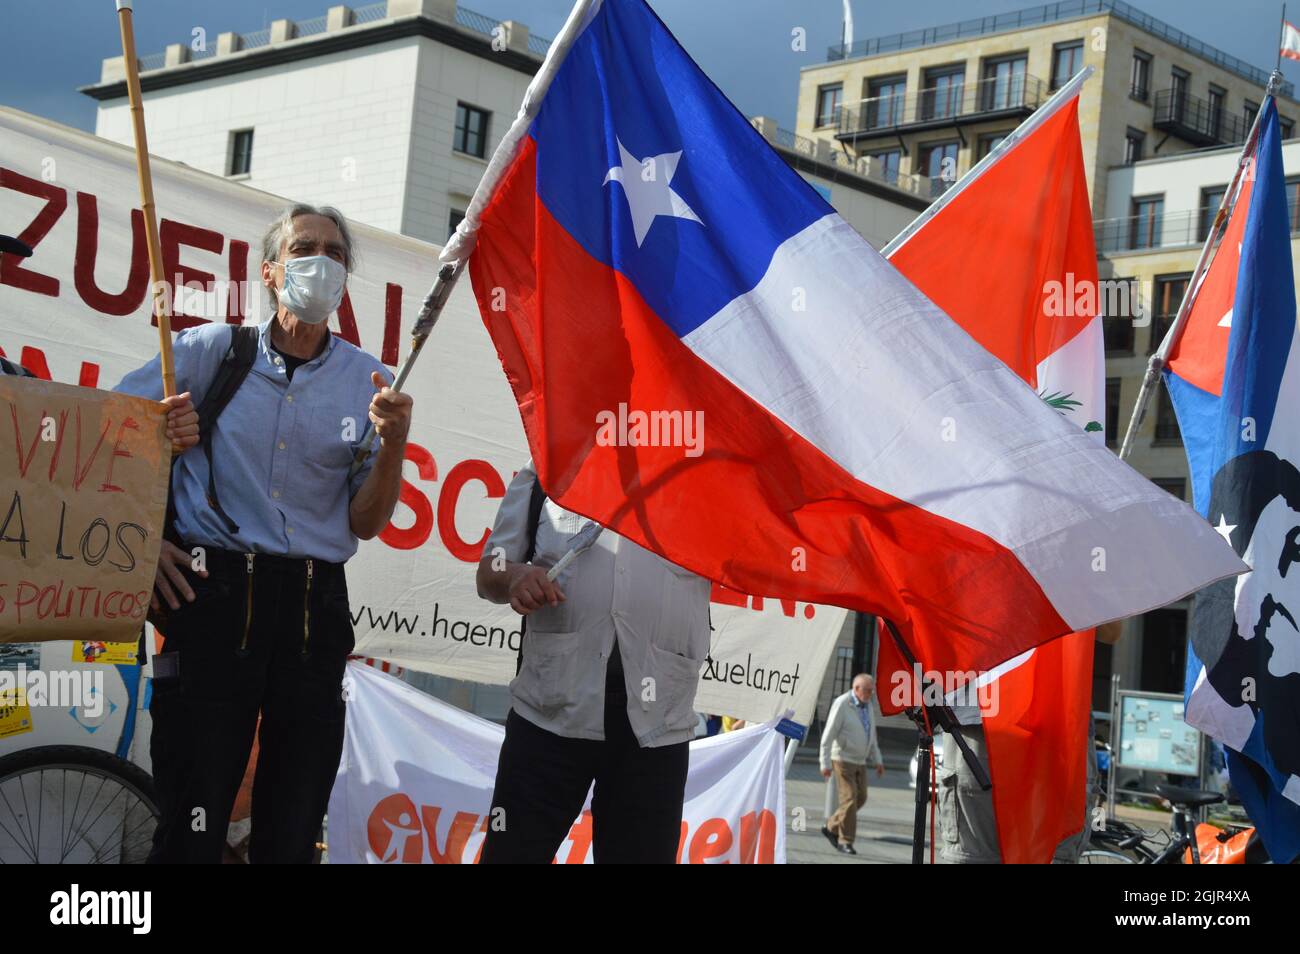 Der 42. Jahrestag des Militärputsches in Chile - Demonstration am Pariser Platz vor dem Brandenburger Tor in Berlin, Deutschland - 11. September 2021. Stockfoto